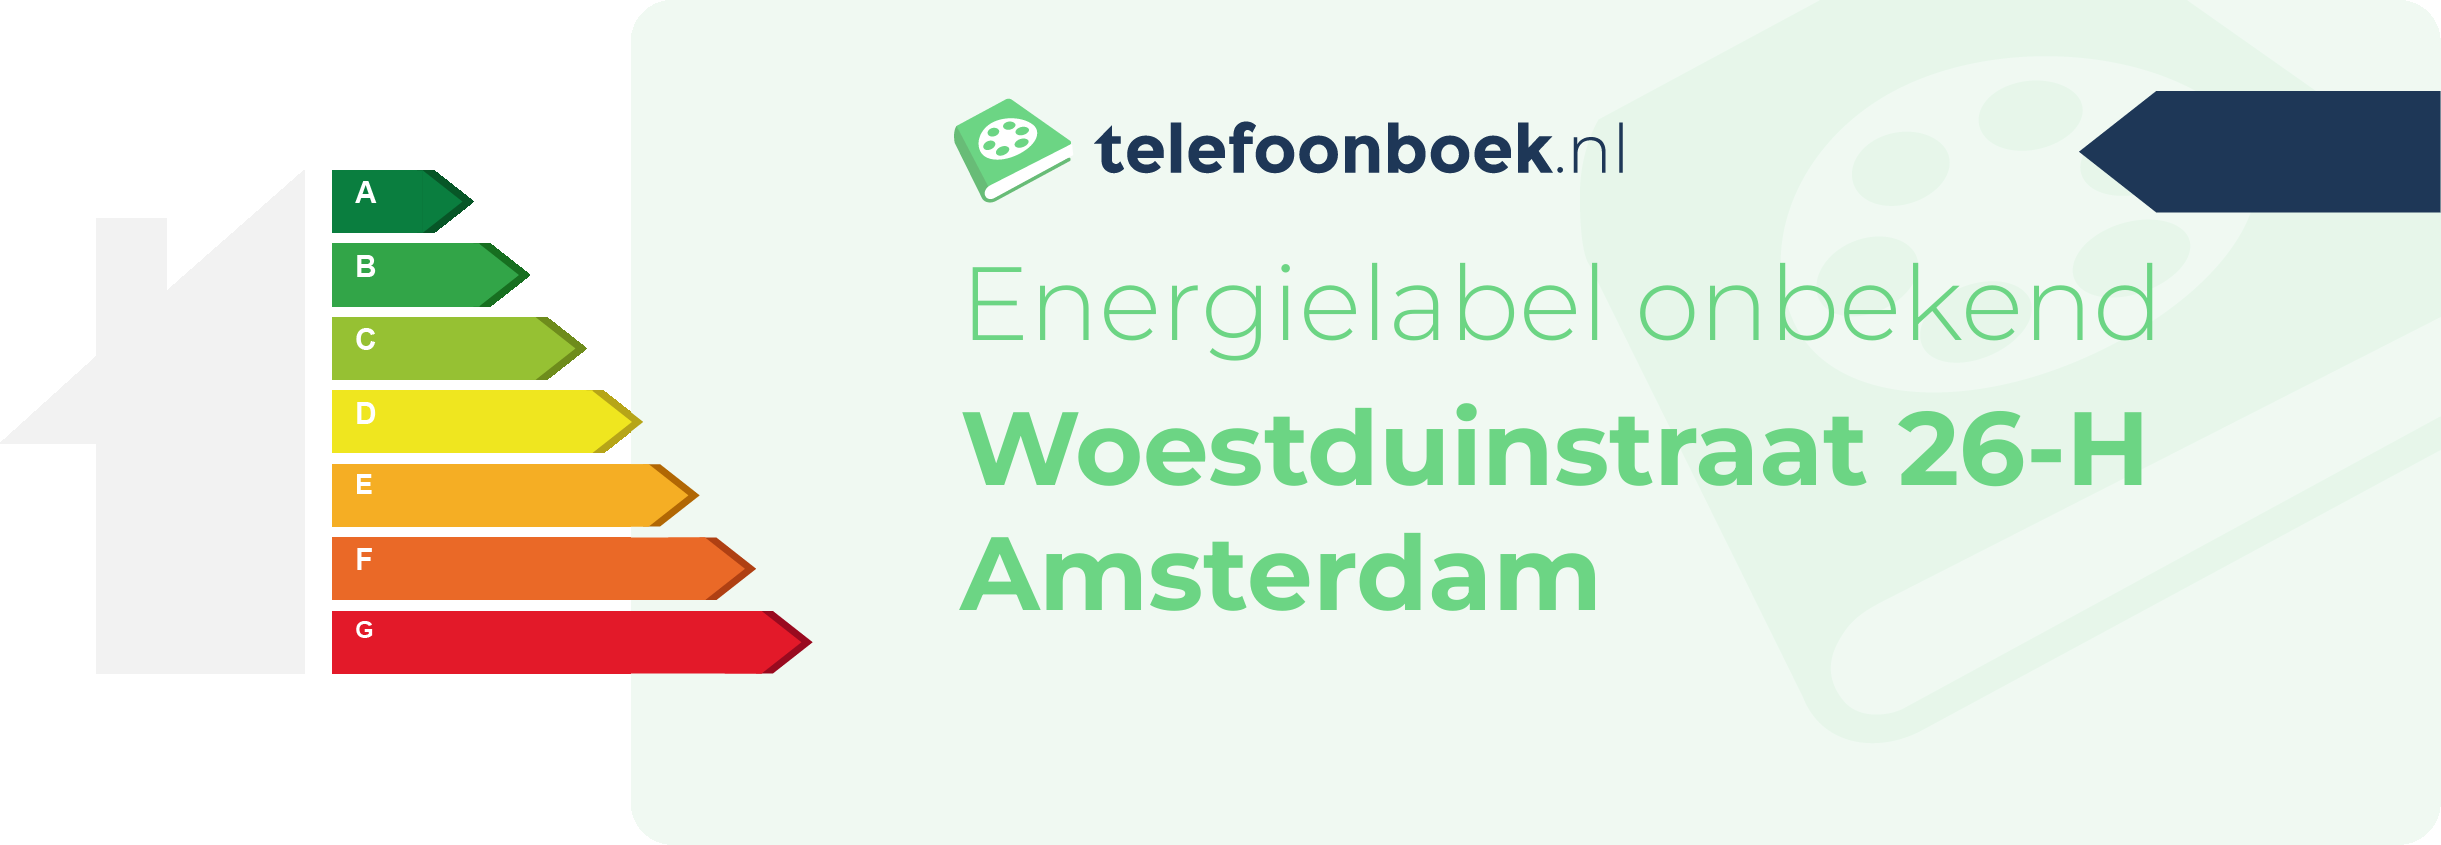 Energielabel Woestduinstraat 26-H Amsterdam